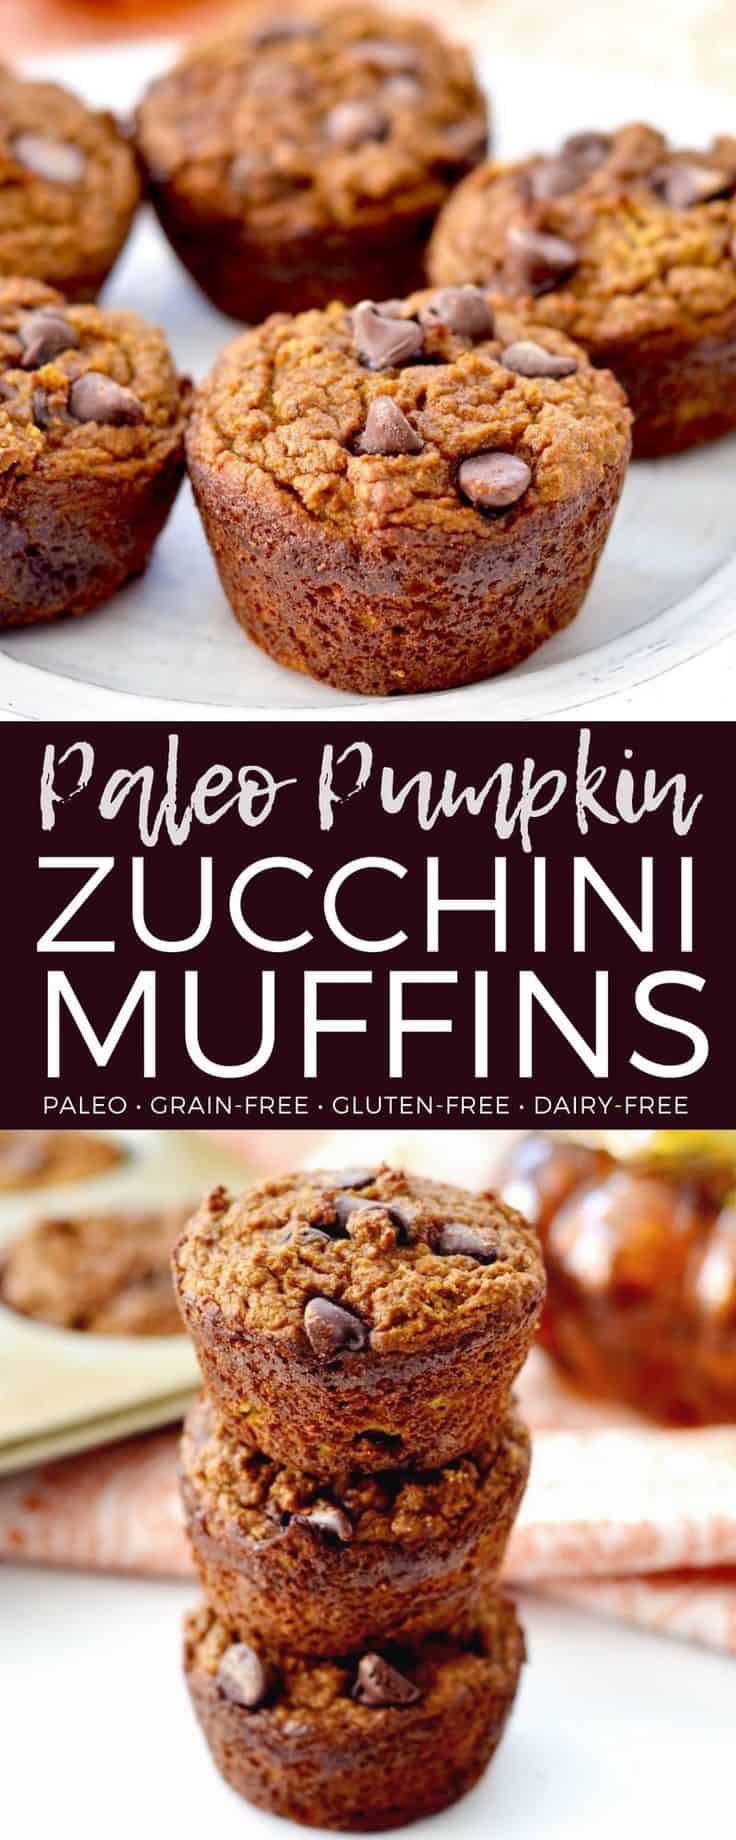 Paleo pumpkin zucchini muffins